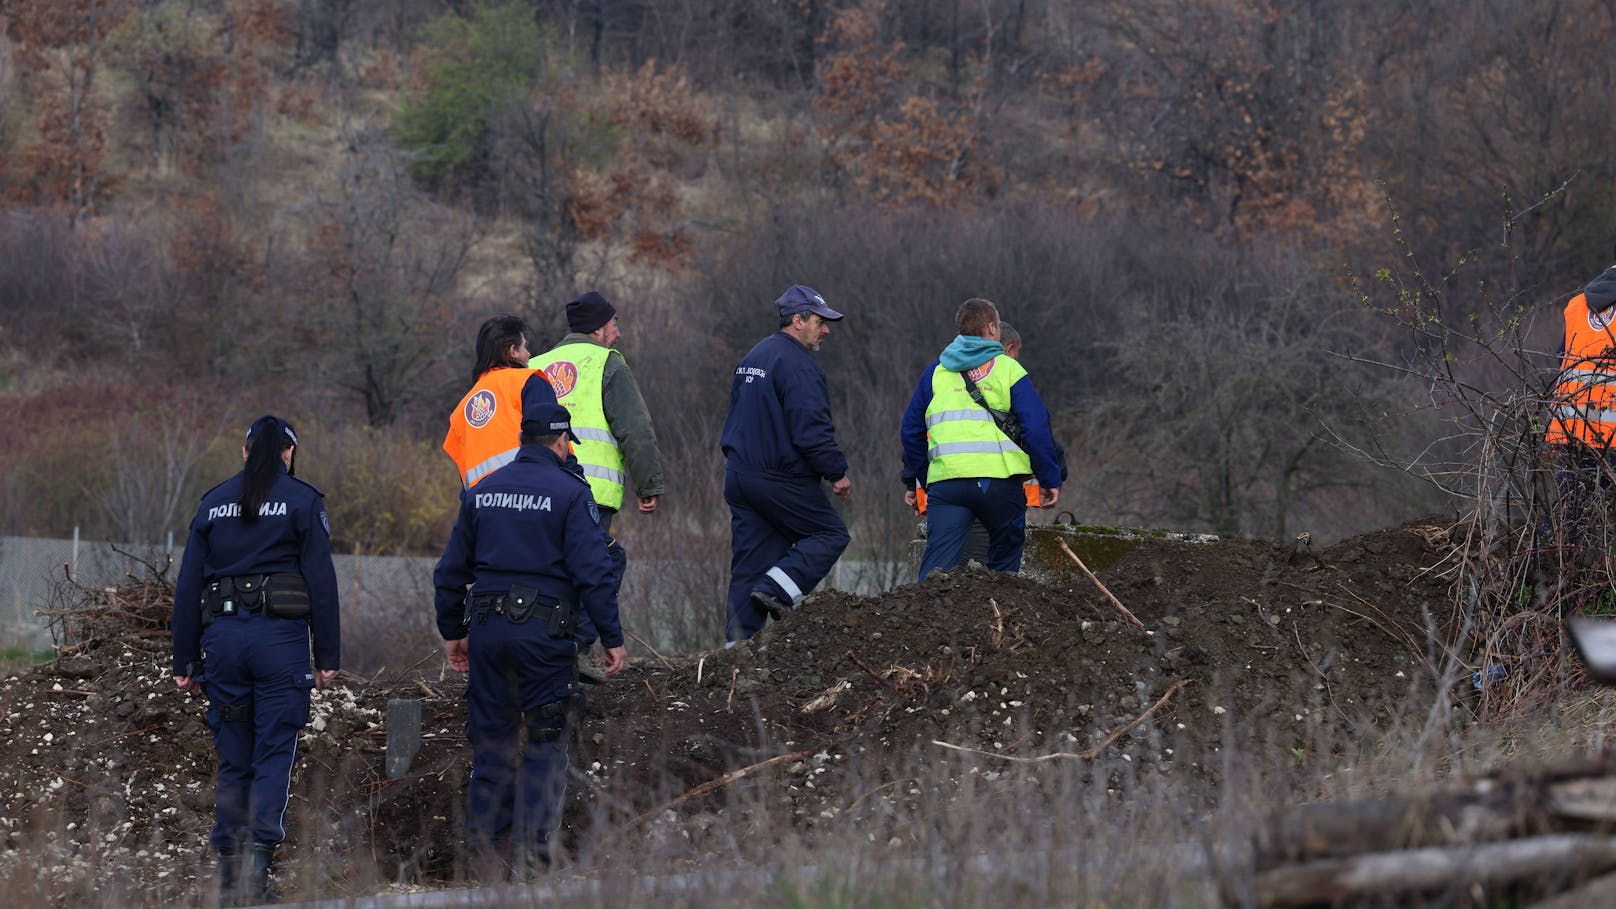 Einsatzkräfte der Polizei durchkämmen jeden Quadratzentimeter rund um die Siedlung Banjsko polje auf der Suche nach der vermissten Danka.